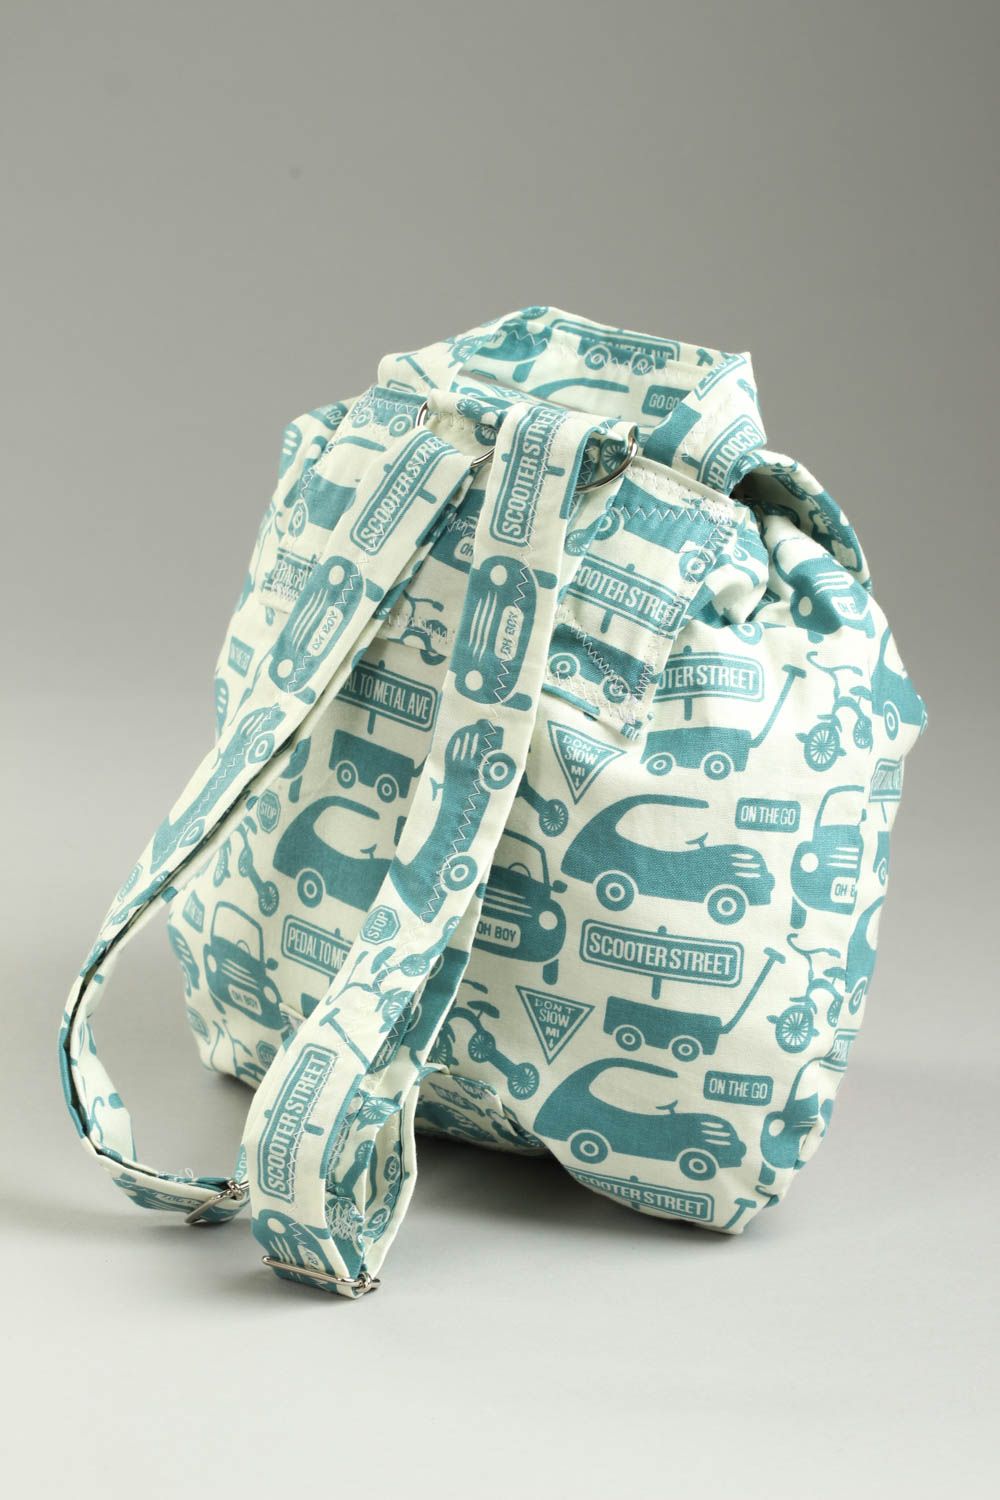 Маленький рюкзак хэнд мейд рюкзак для ребенка текстильный рюкзак с машинками фото 3